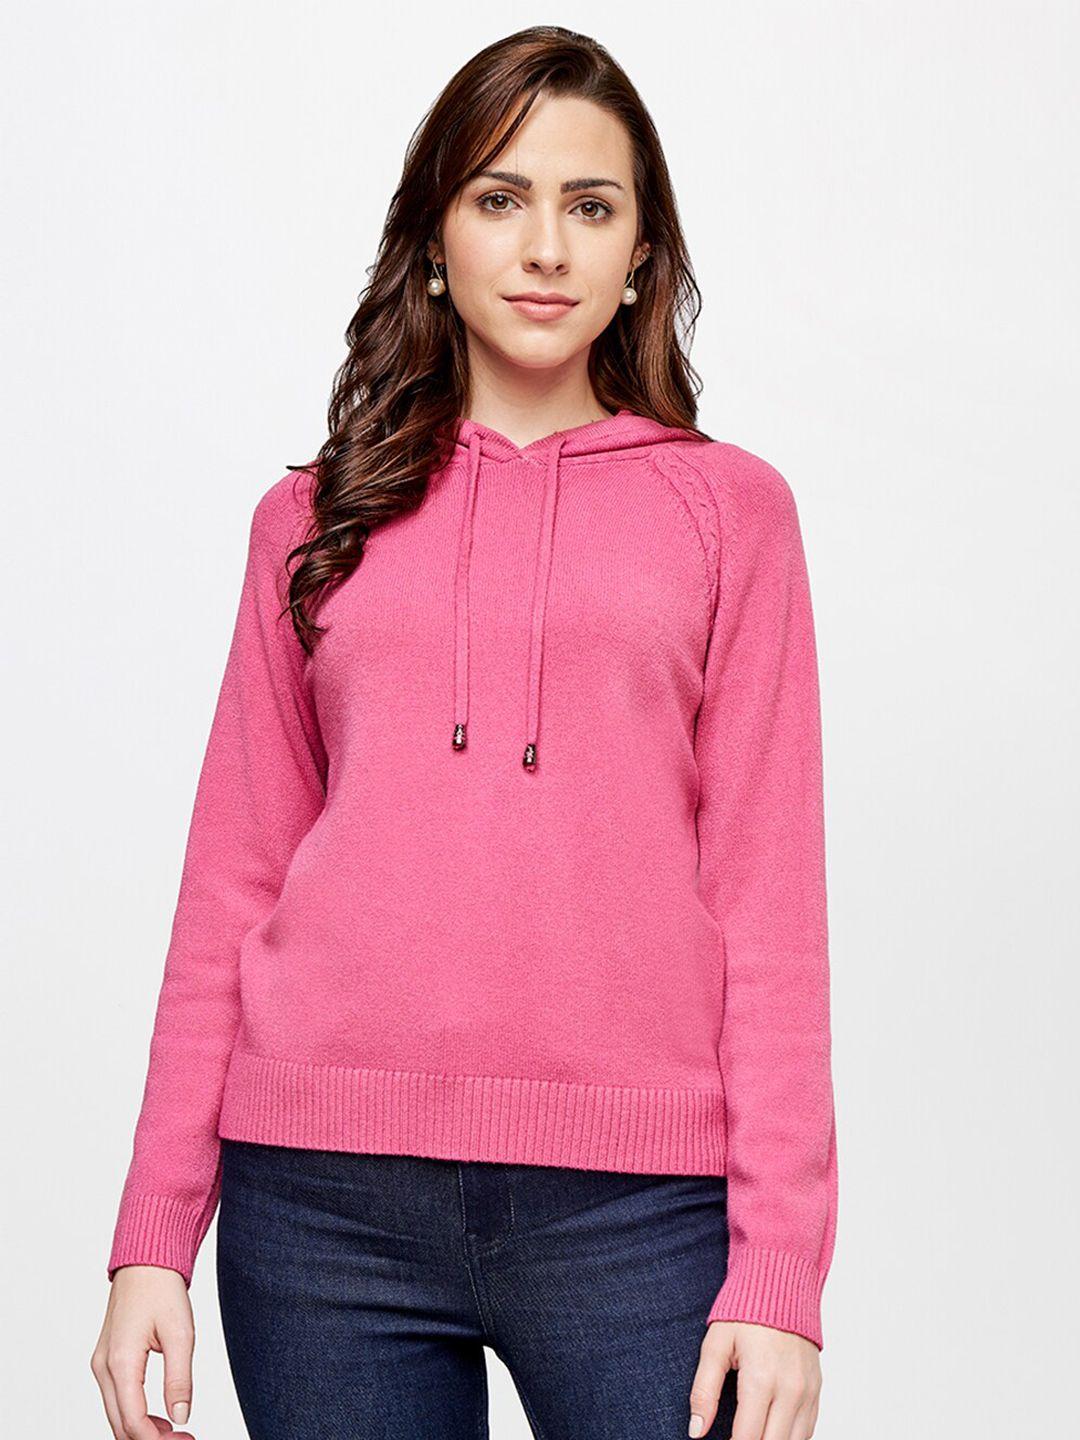 and women pink hooded sweatshirt